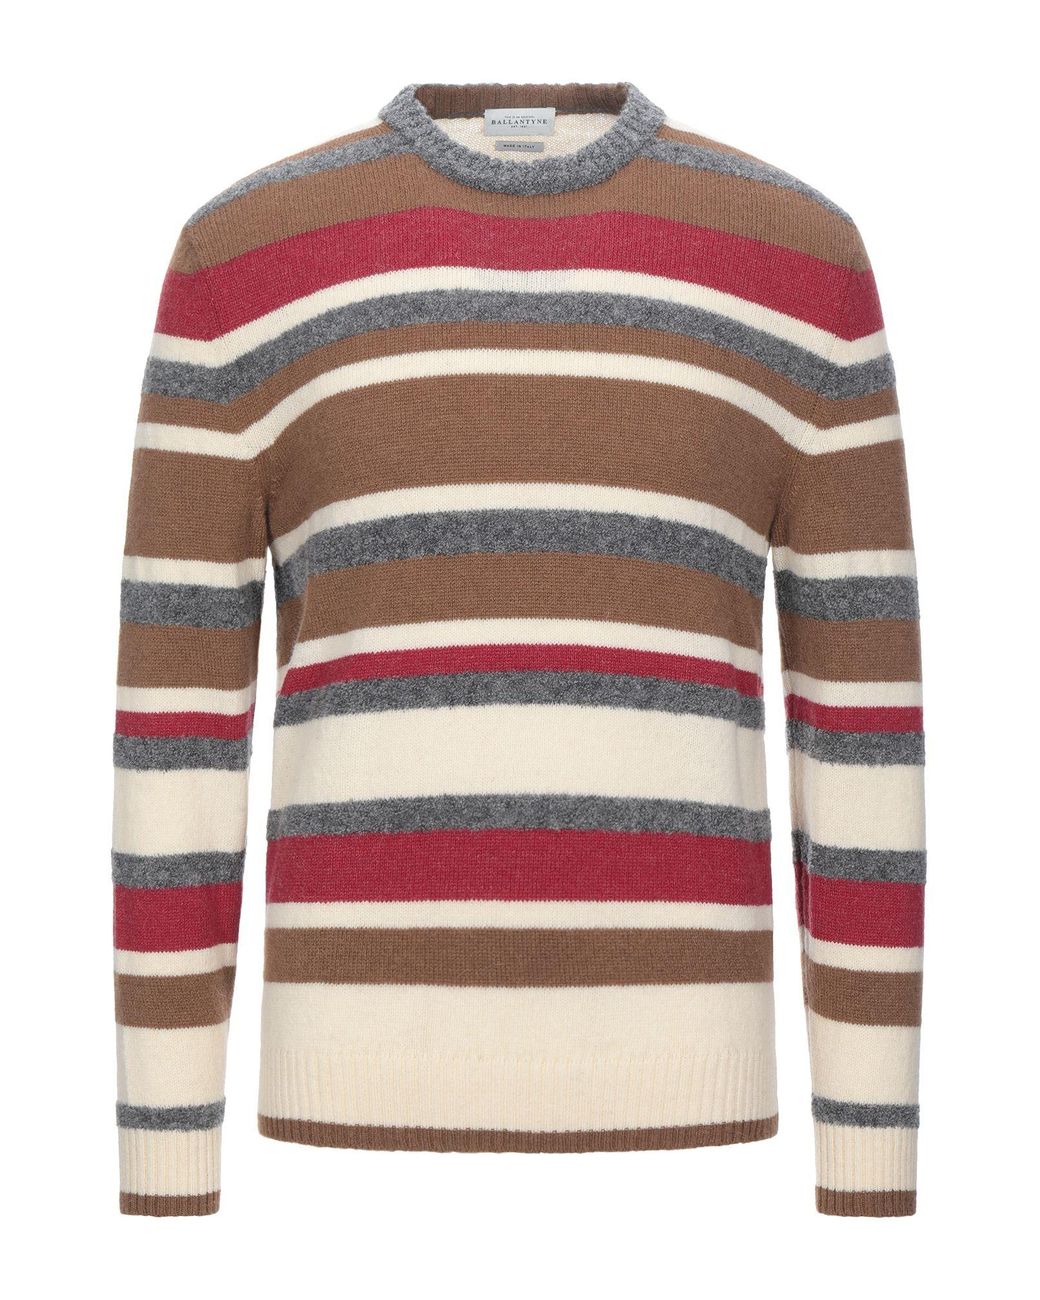 Ballantyne Sweater in Brown for Men - Lyst